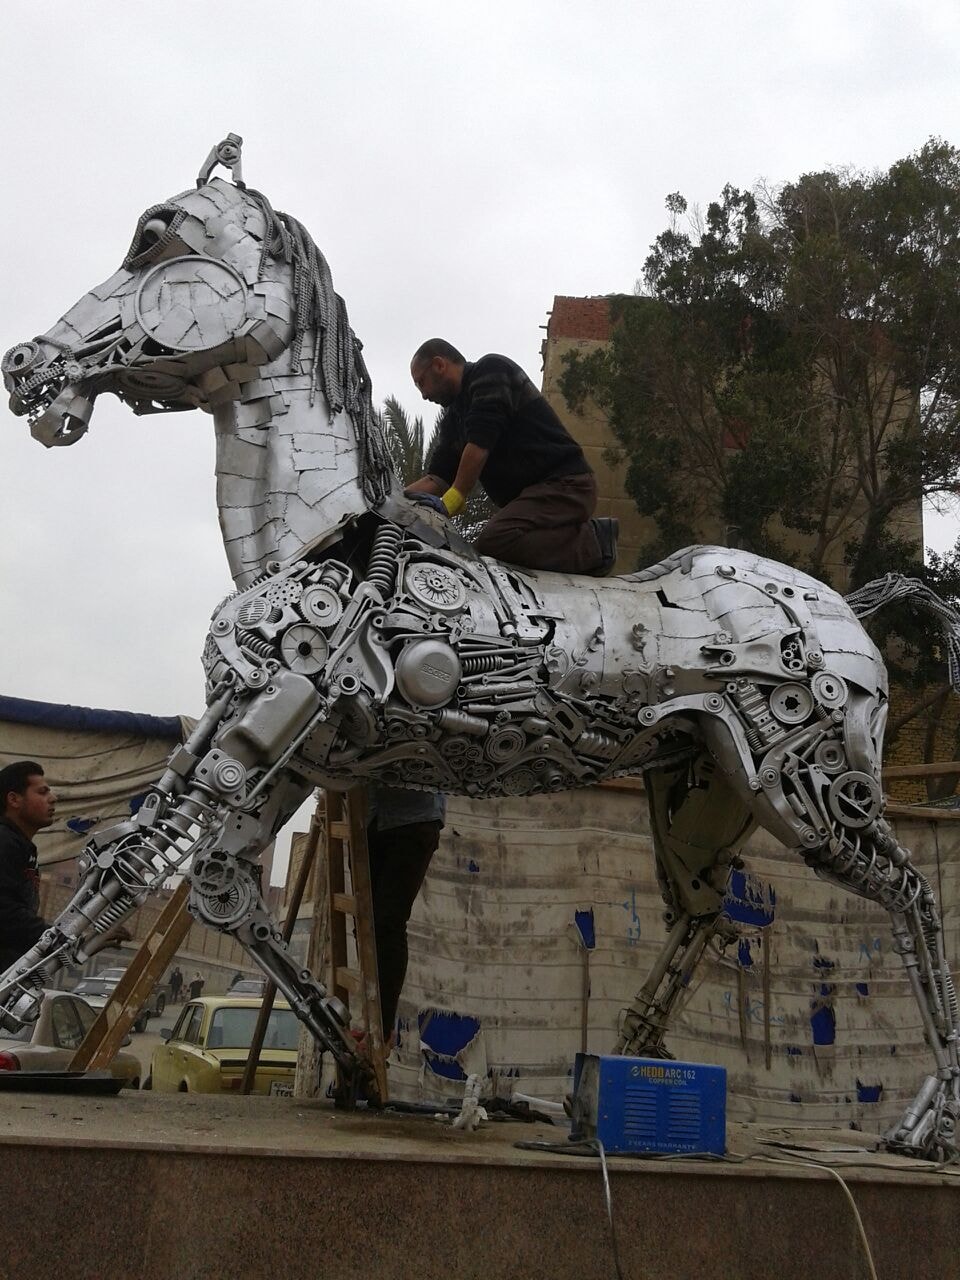 صورة أخرى لتمثال الحصان